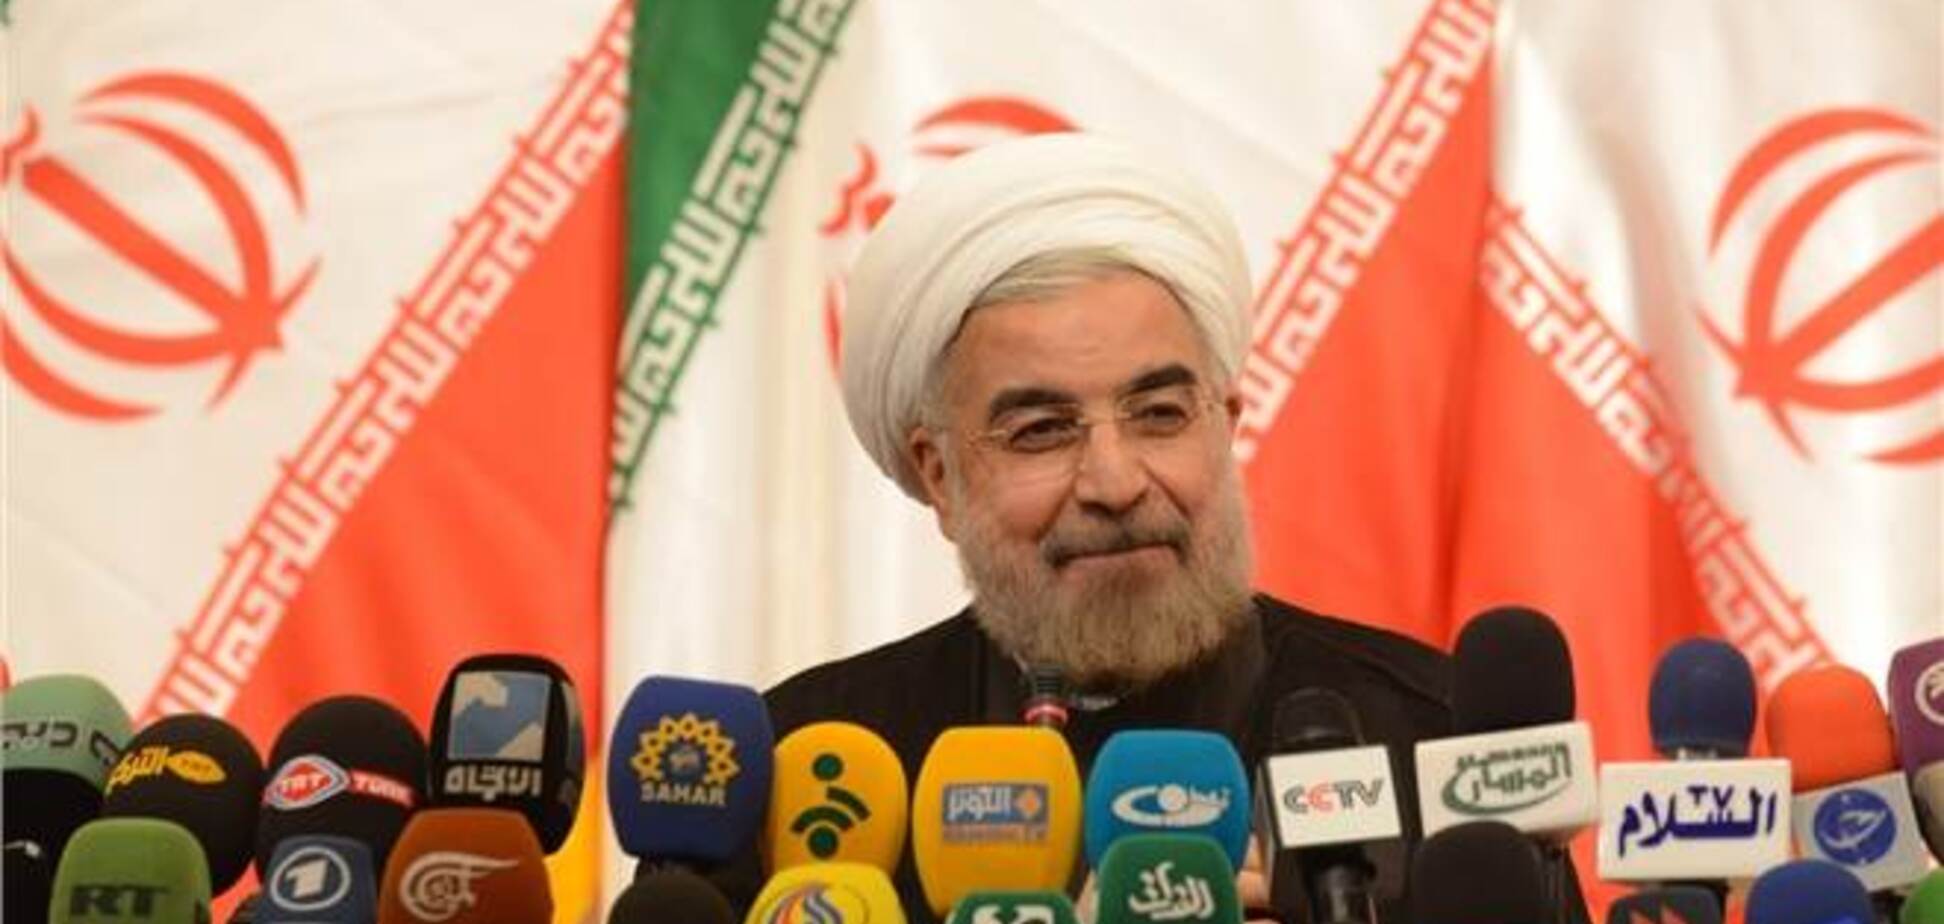 США готові до 'серйозних переговорів' з новим лідером Ірану